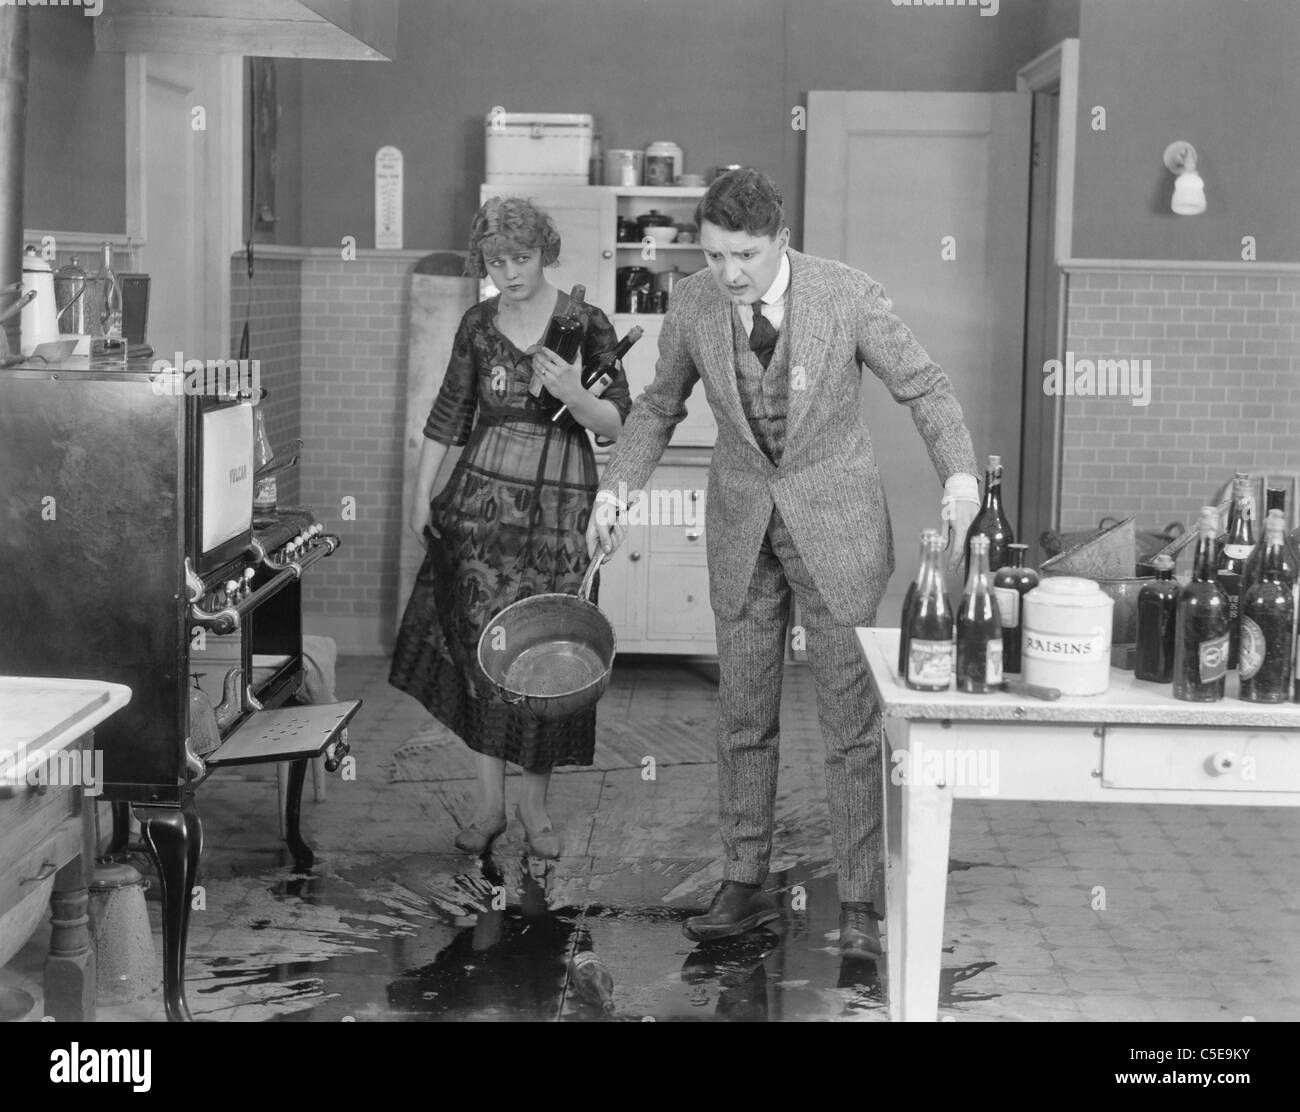 Uomo e donna che guarda versato del liquido sul pavimento della cucina Foto Stock